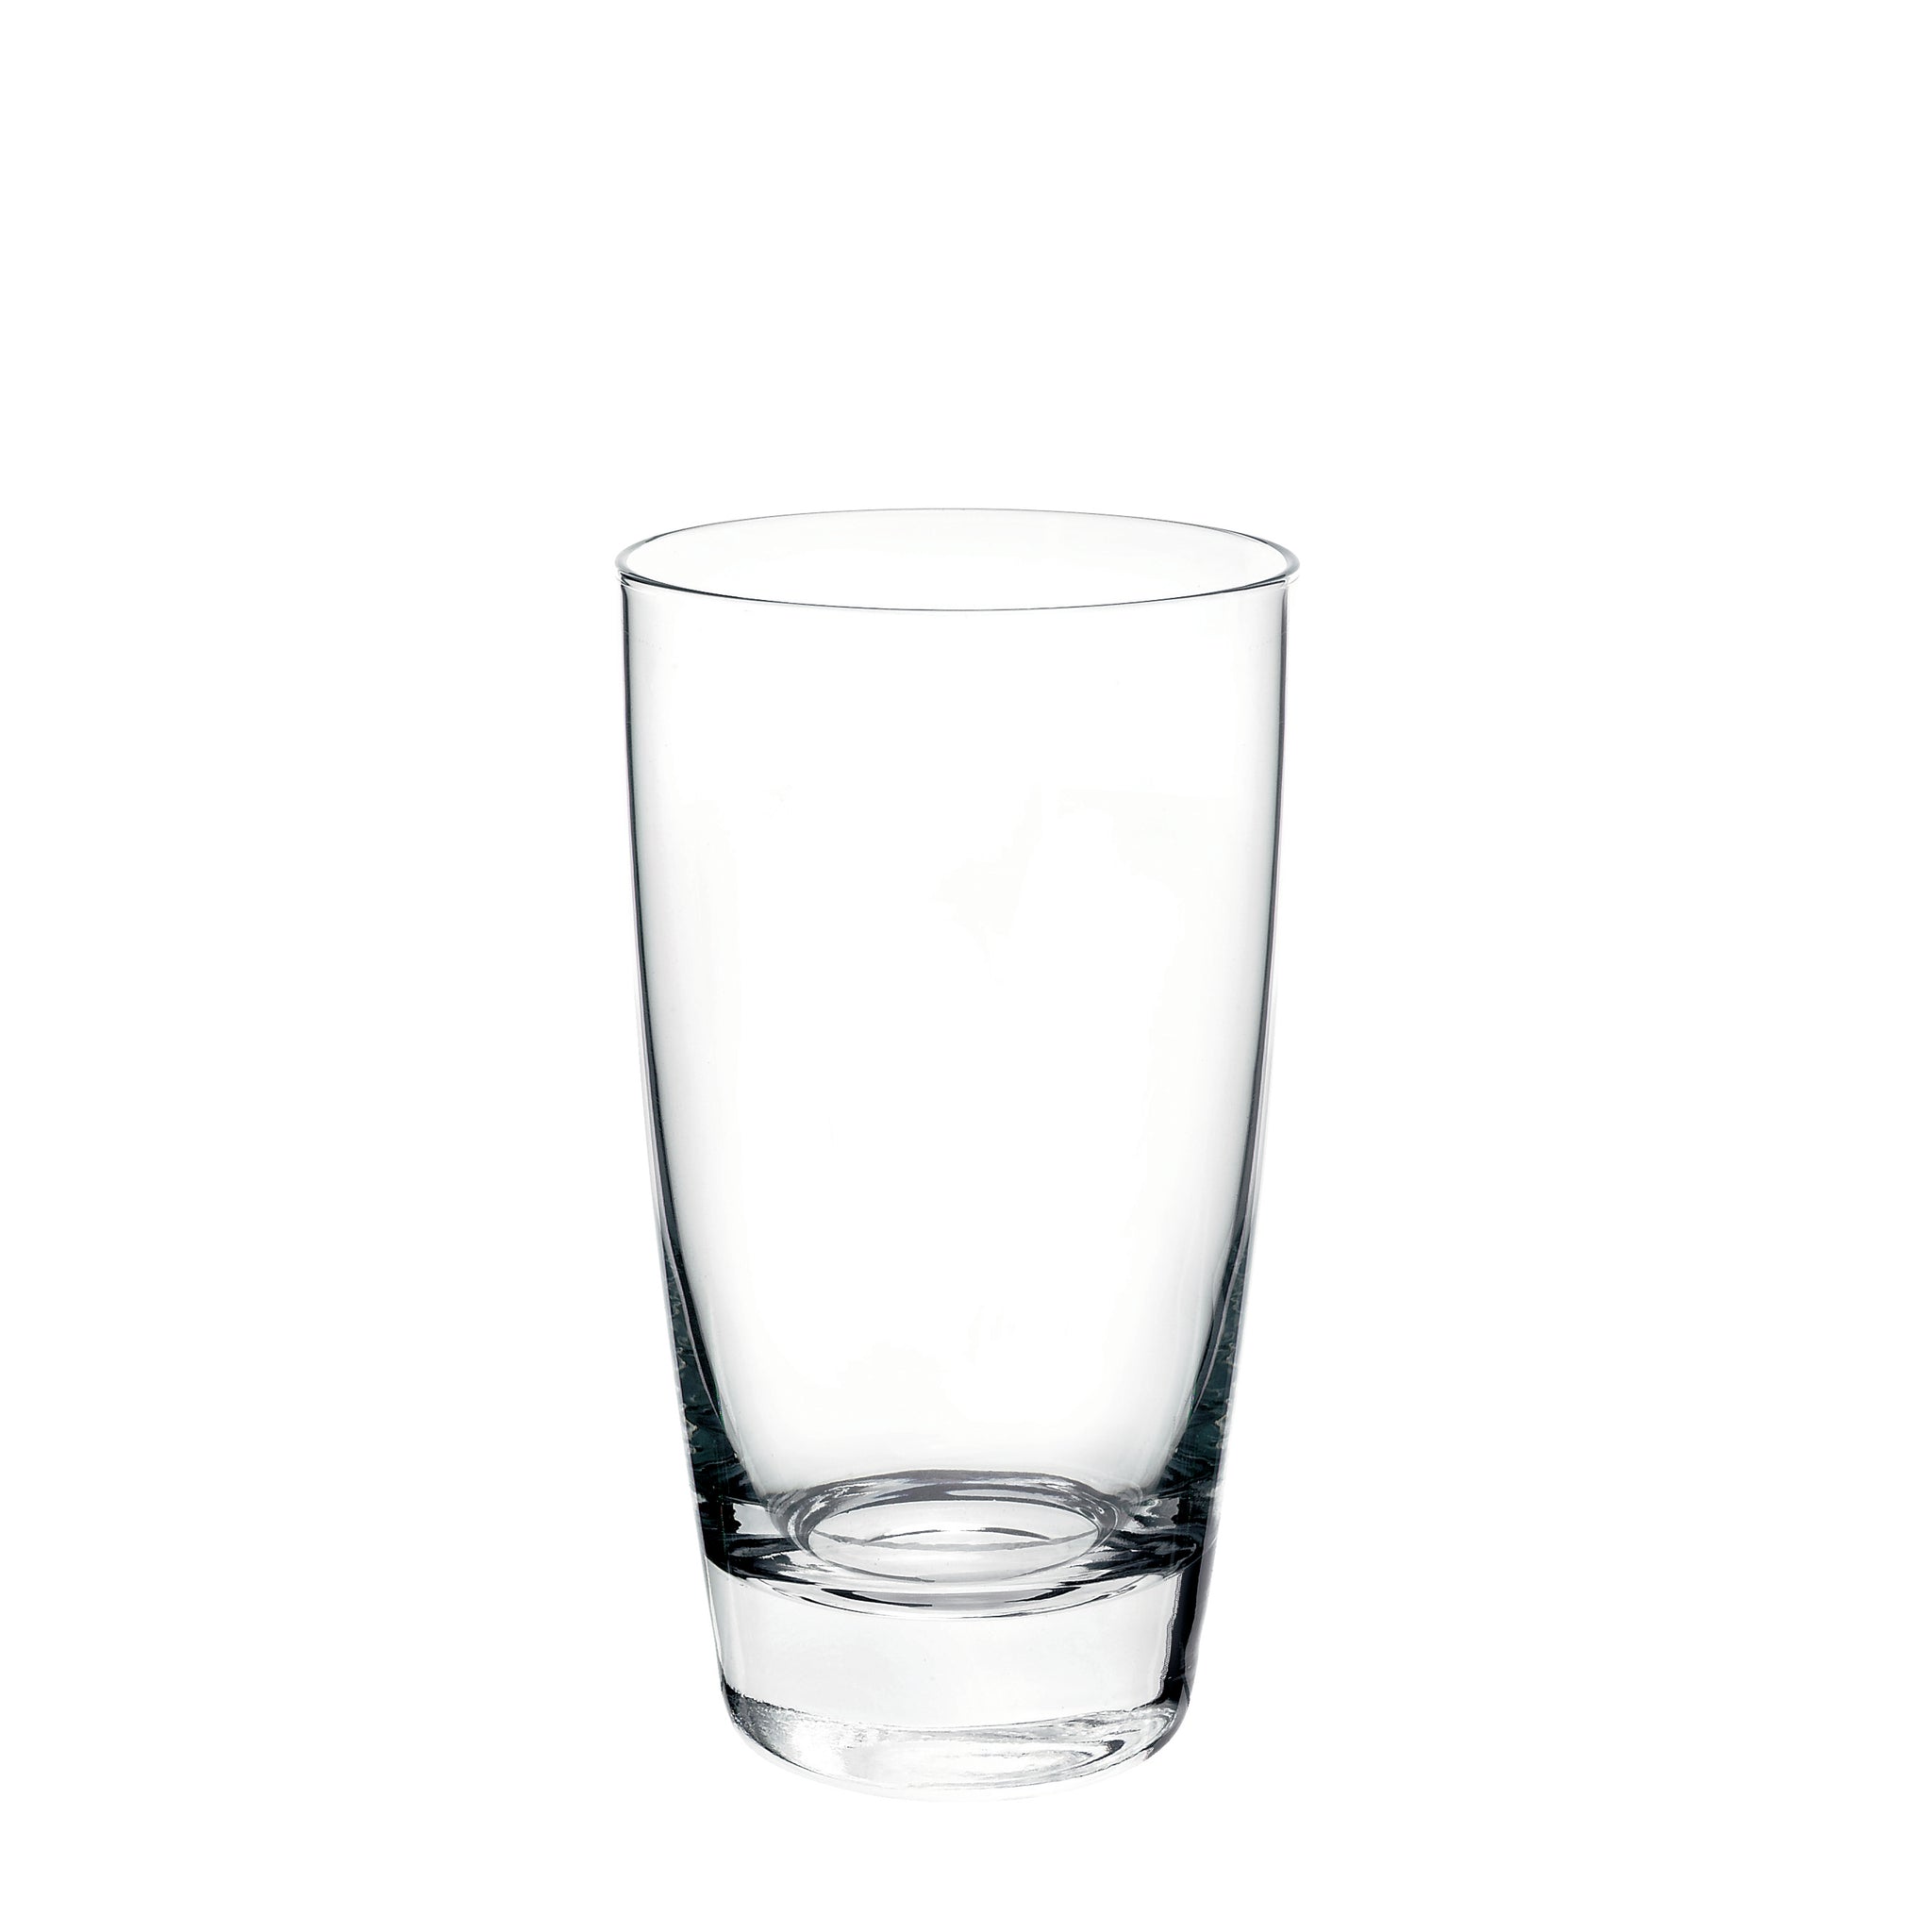 Nadia 15.25 oz. Cooler Drinking Glasses (Set of 4)